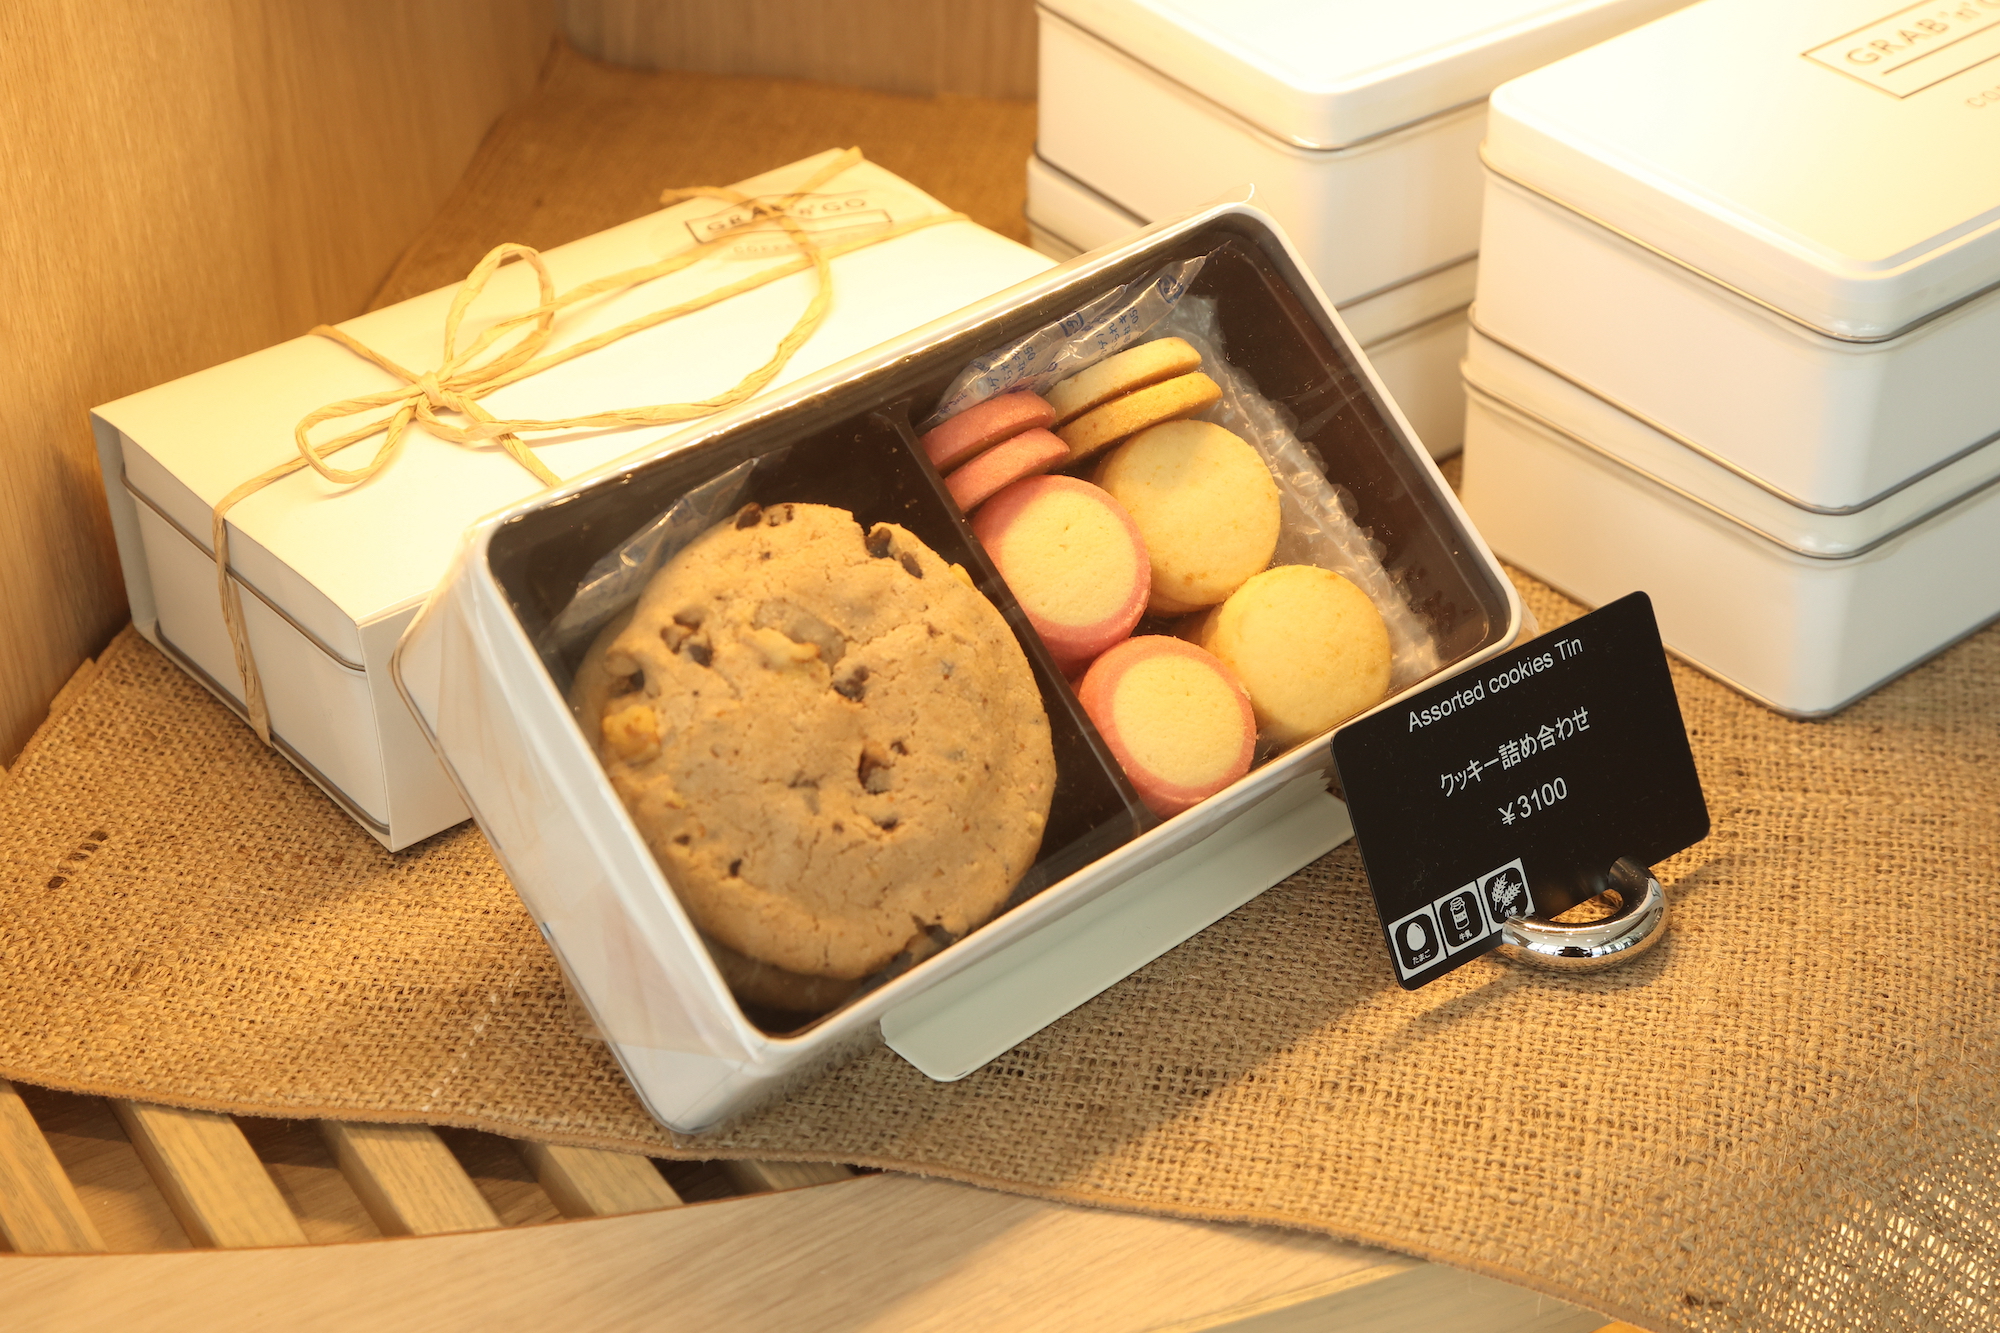 話題のチョコチップクッキーは「GRAB’n GO Coffee & Deli」で購入することができる。